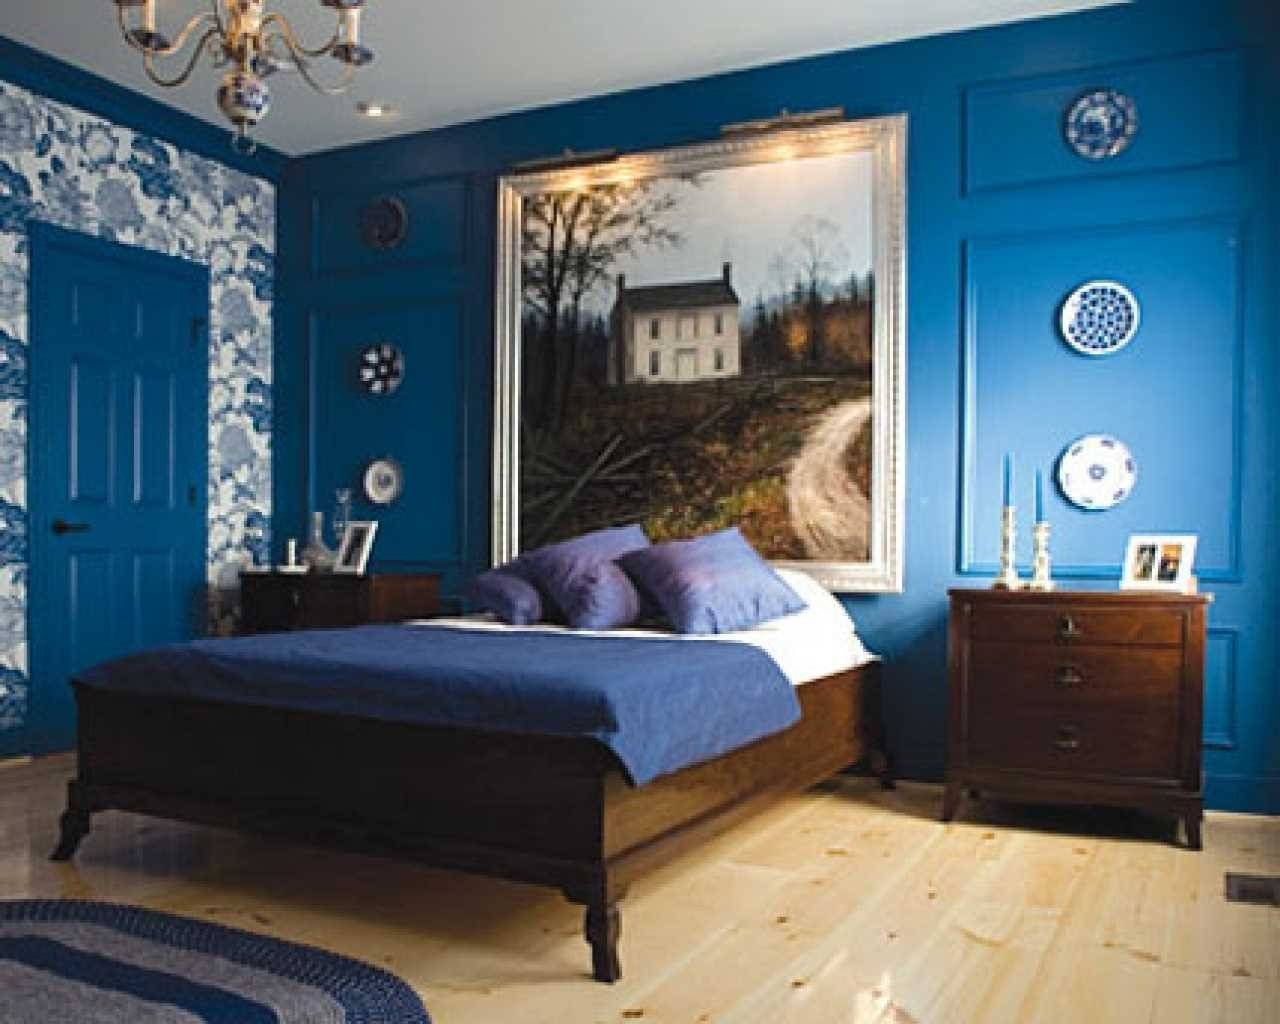 Обои синие для стен: когда применяются темно-синие или молочно синие обои в квартире, как их правильно приклеить и какие правила стоит соблюдать